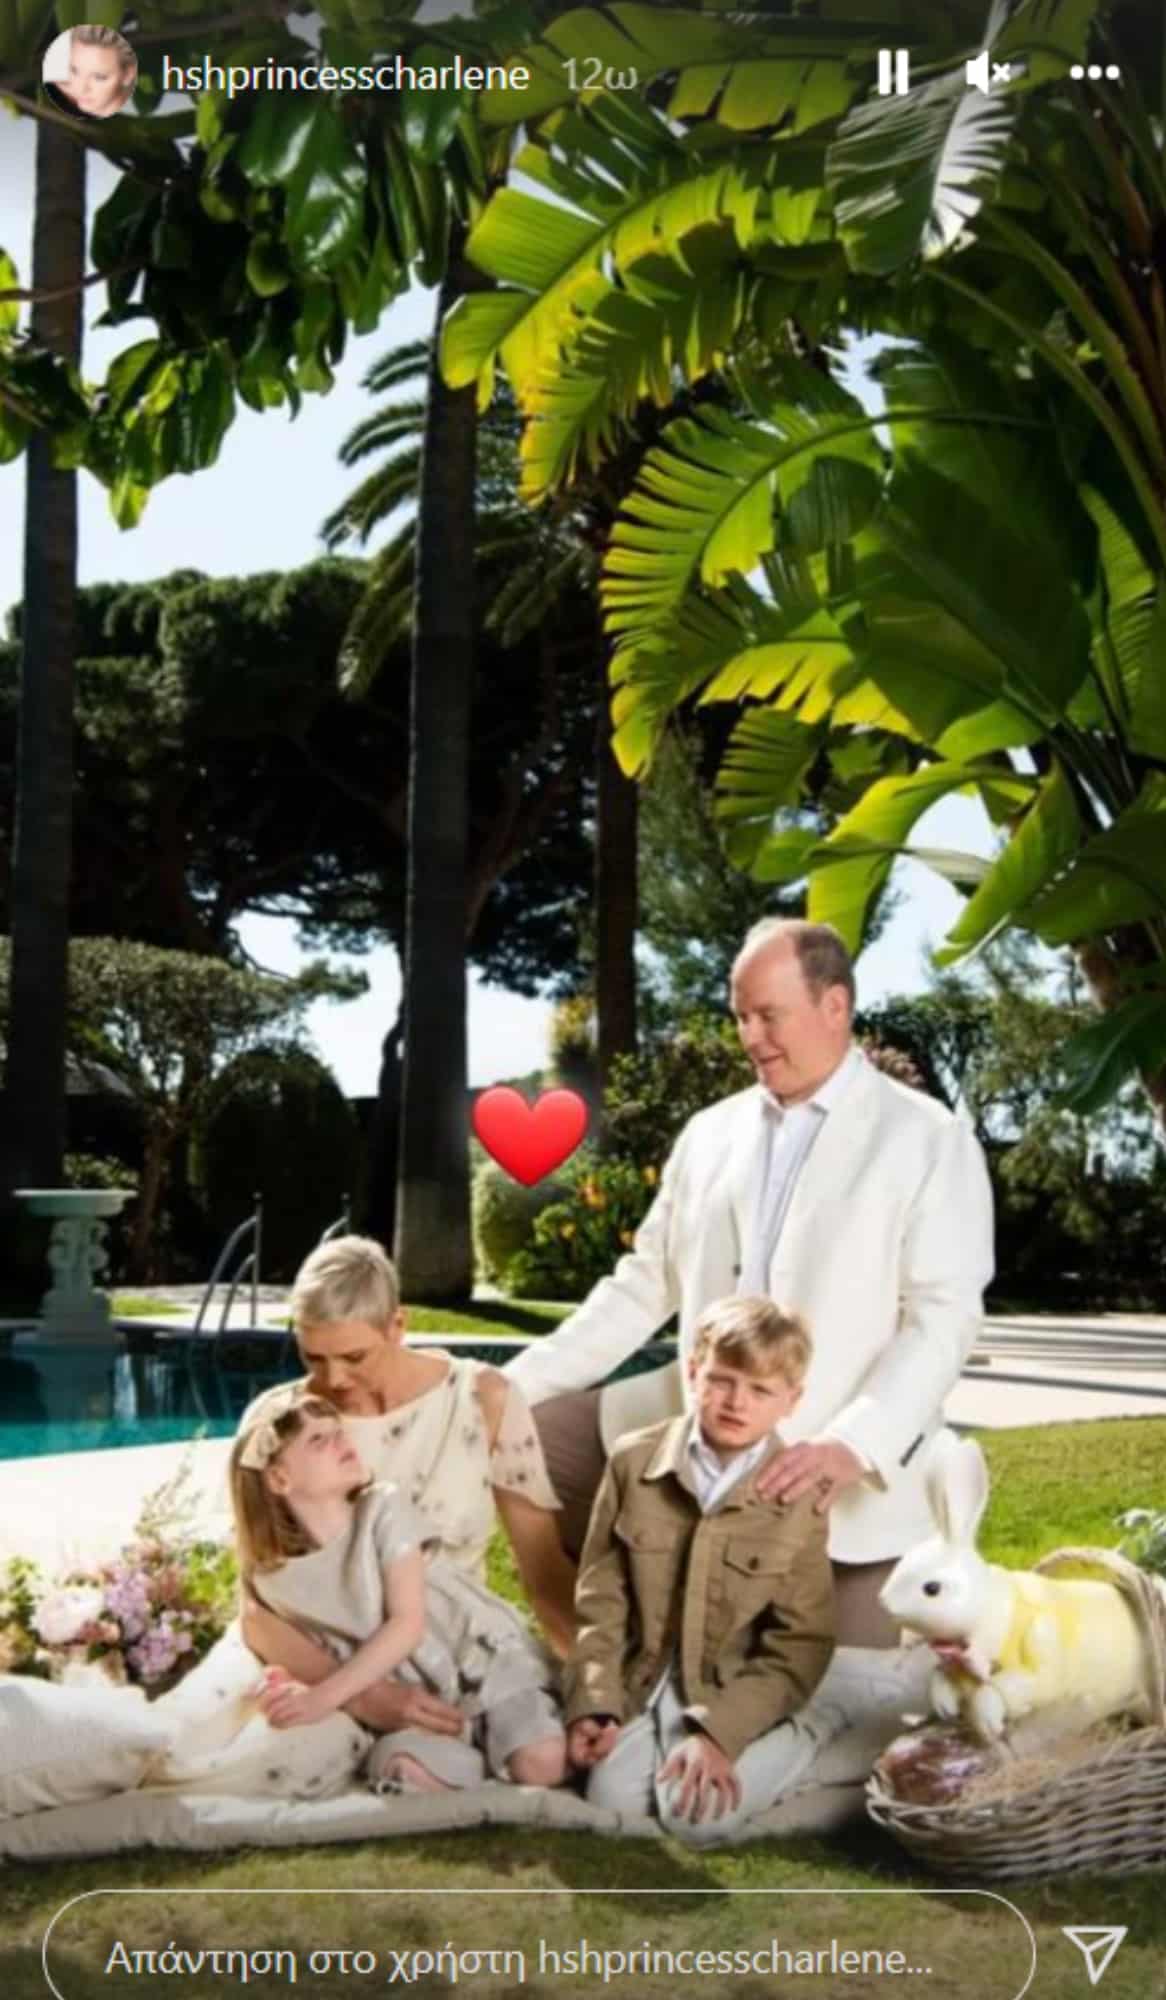 σαρλιν1 - Πάσχα στο Μονακό με την οικογένειά της έκανε η πριγκίπισσα Σαρλίν (εικόνες)